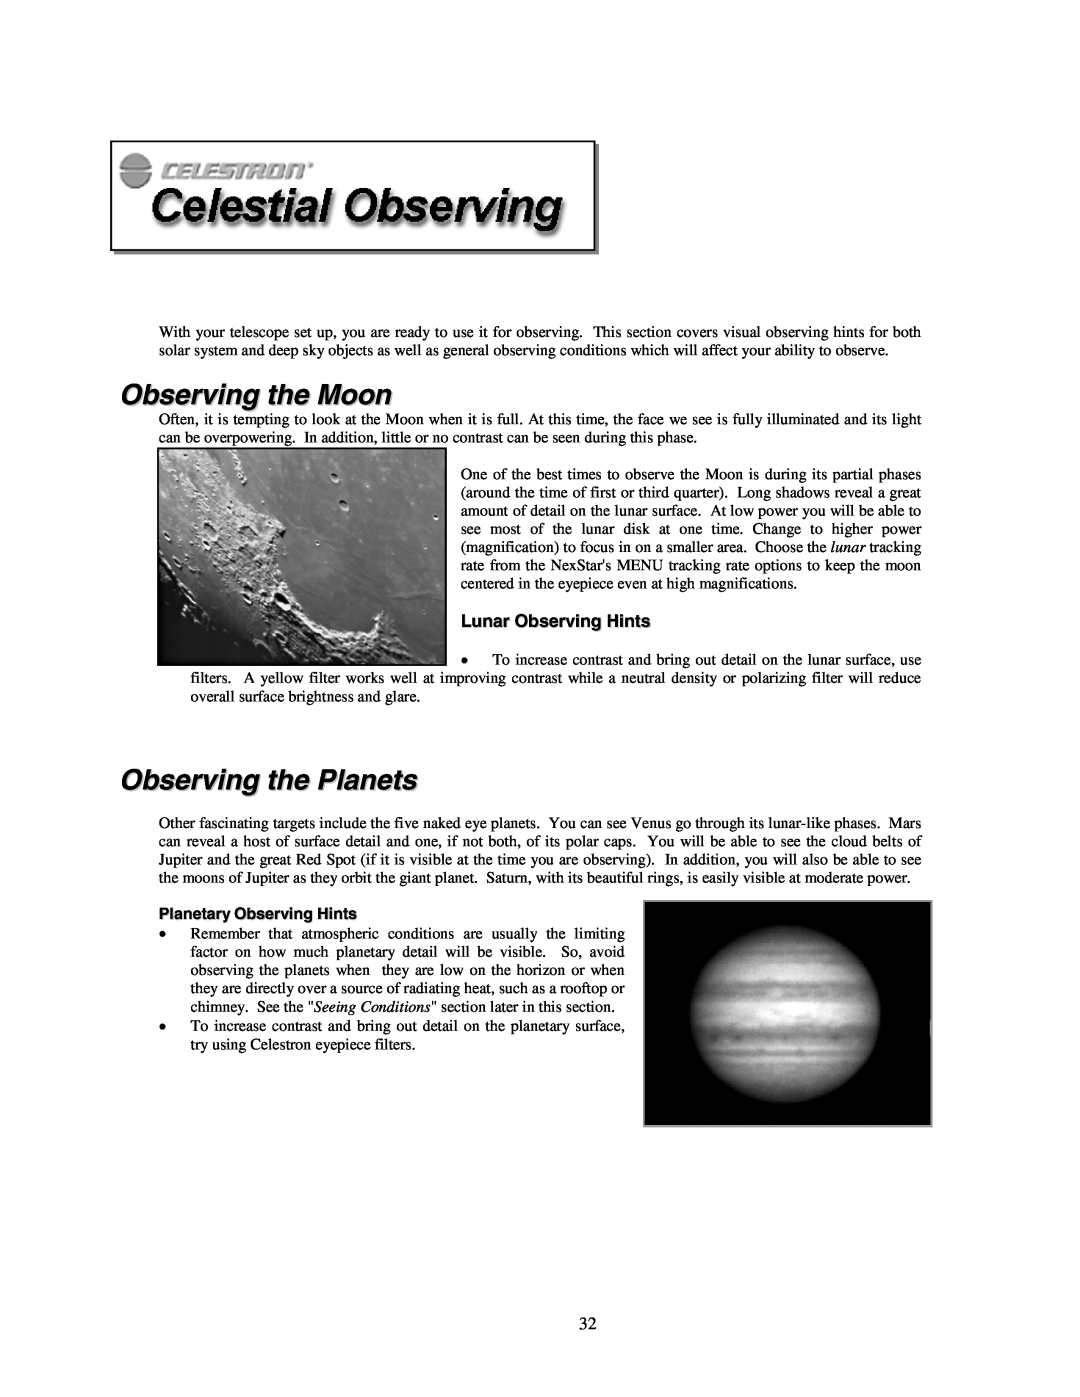 Celestron NexStar HC manual Observing the Moon, Observing the Planets, Lunar Observing Hints, Planetary Observing Hints 